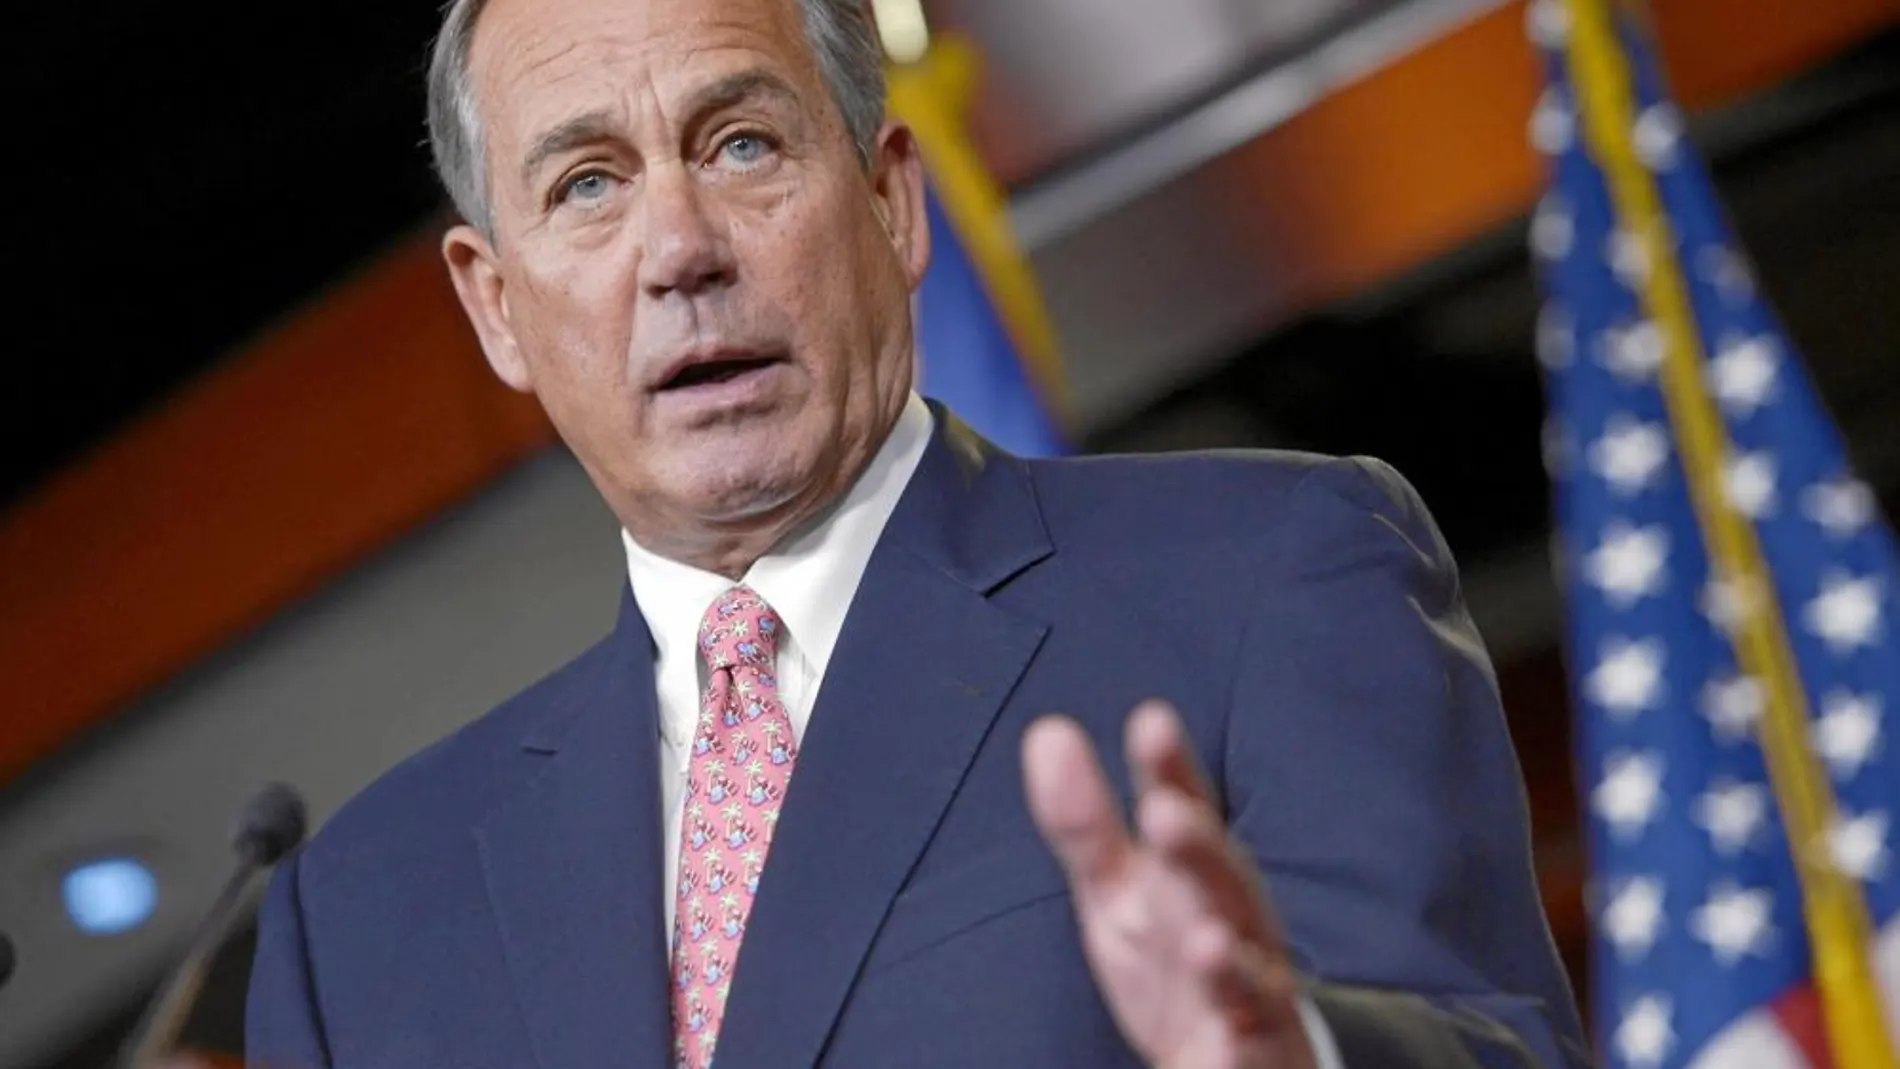 El republicano John Boehner, presidente de la Cámara de Representantes se «alió» con Obama para sacar adelante los presupuestos